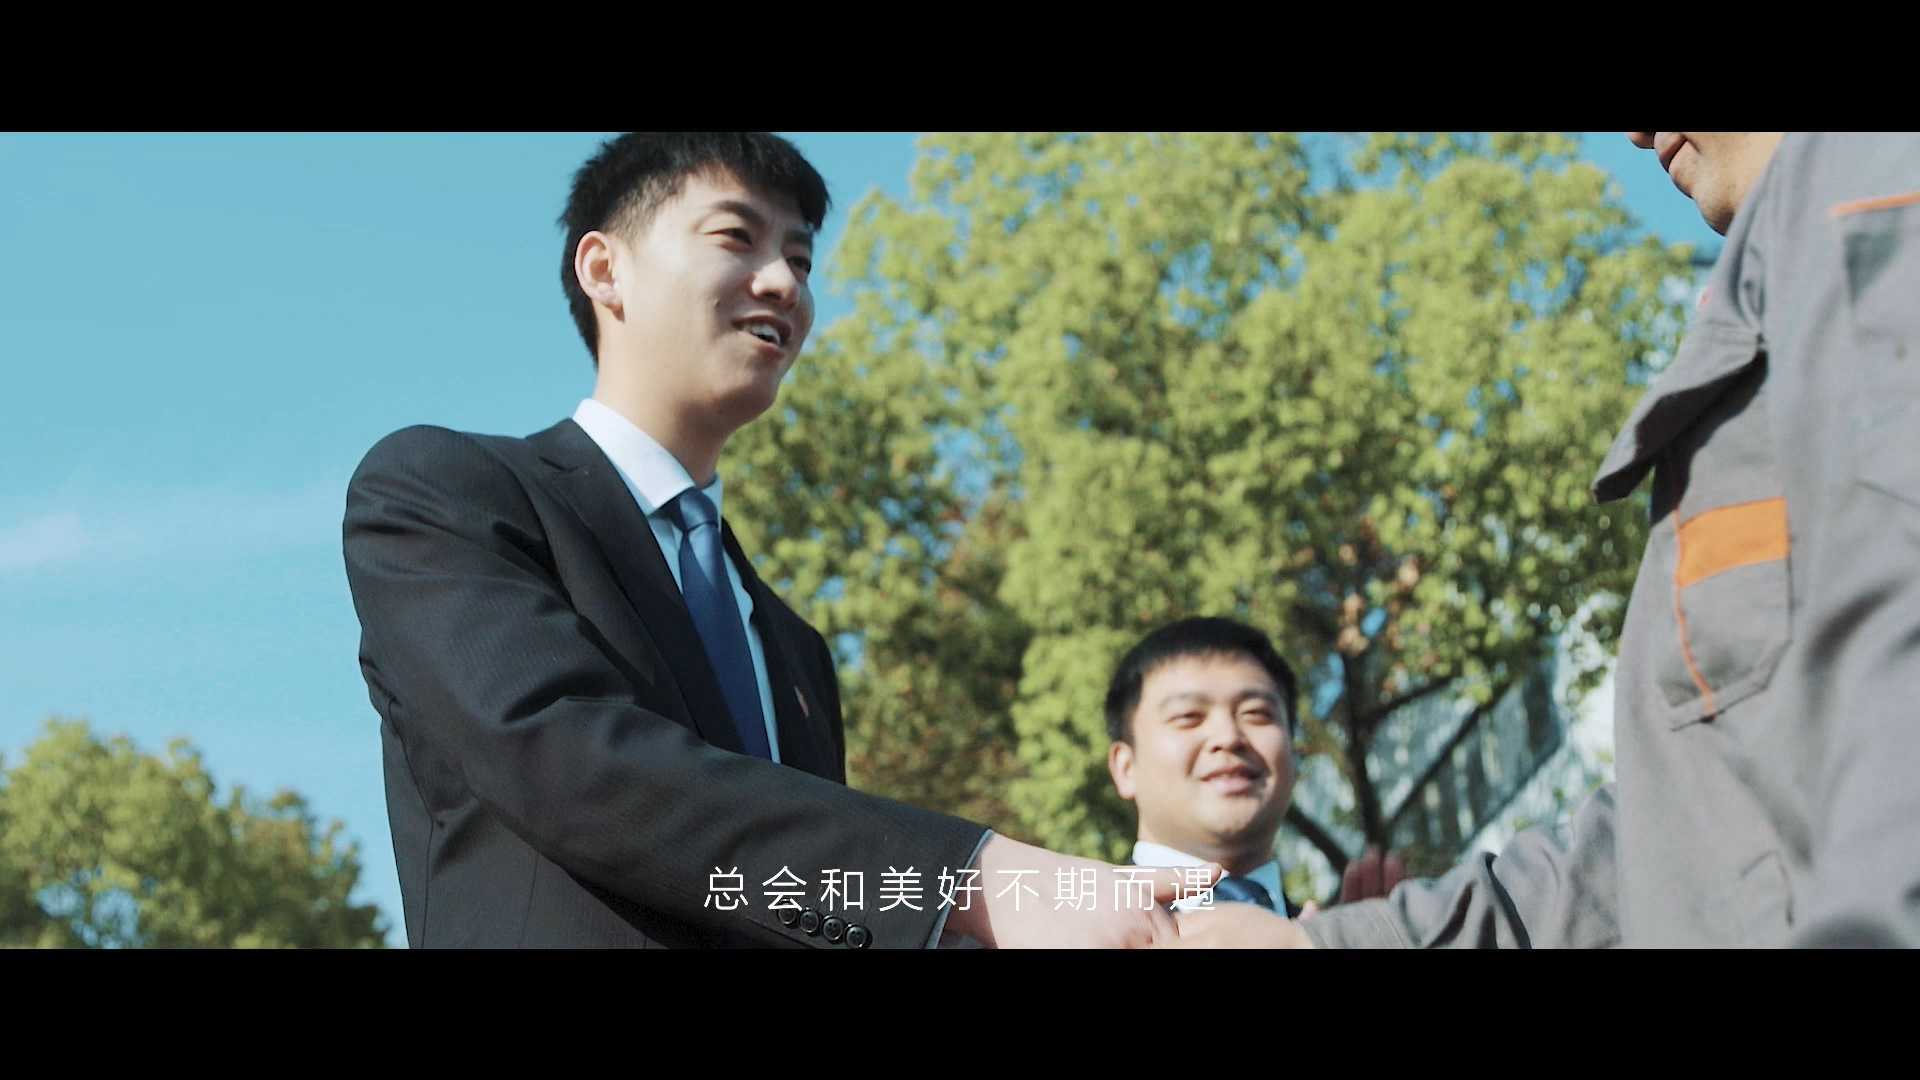 靖江农商银行形象宣传片——为梦而行